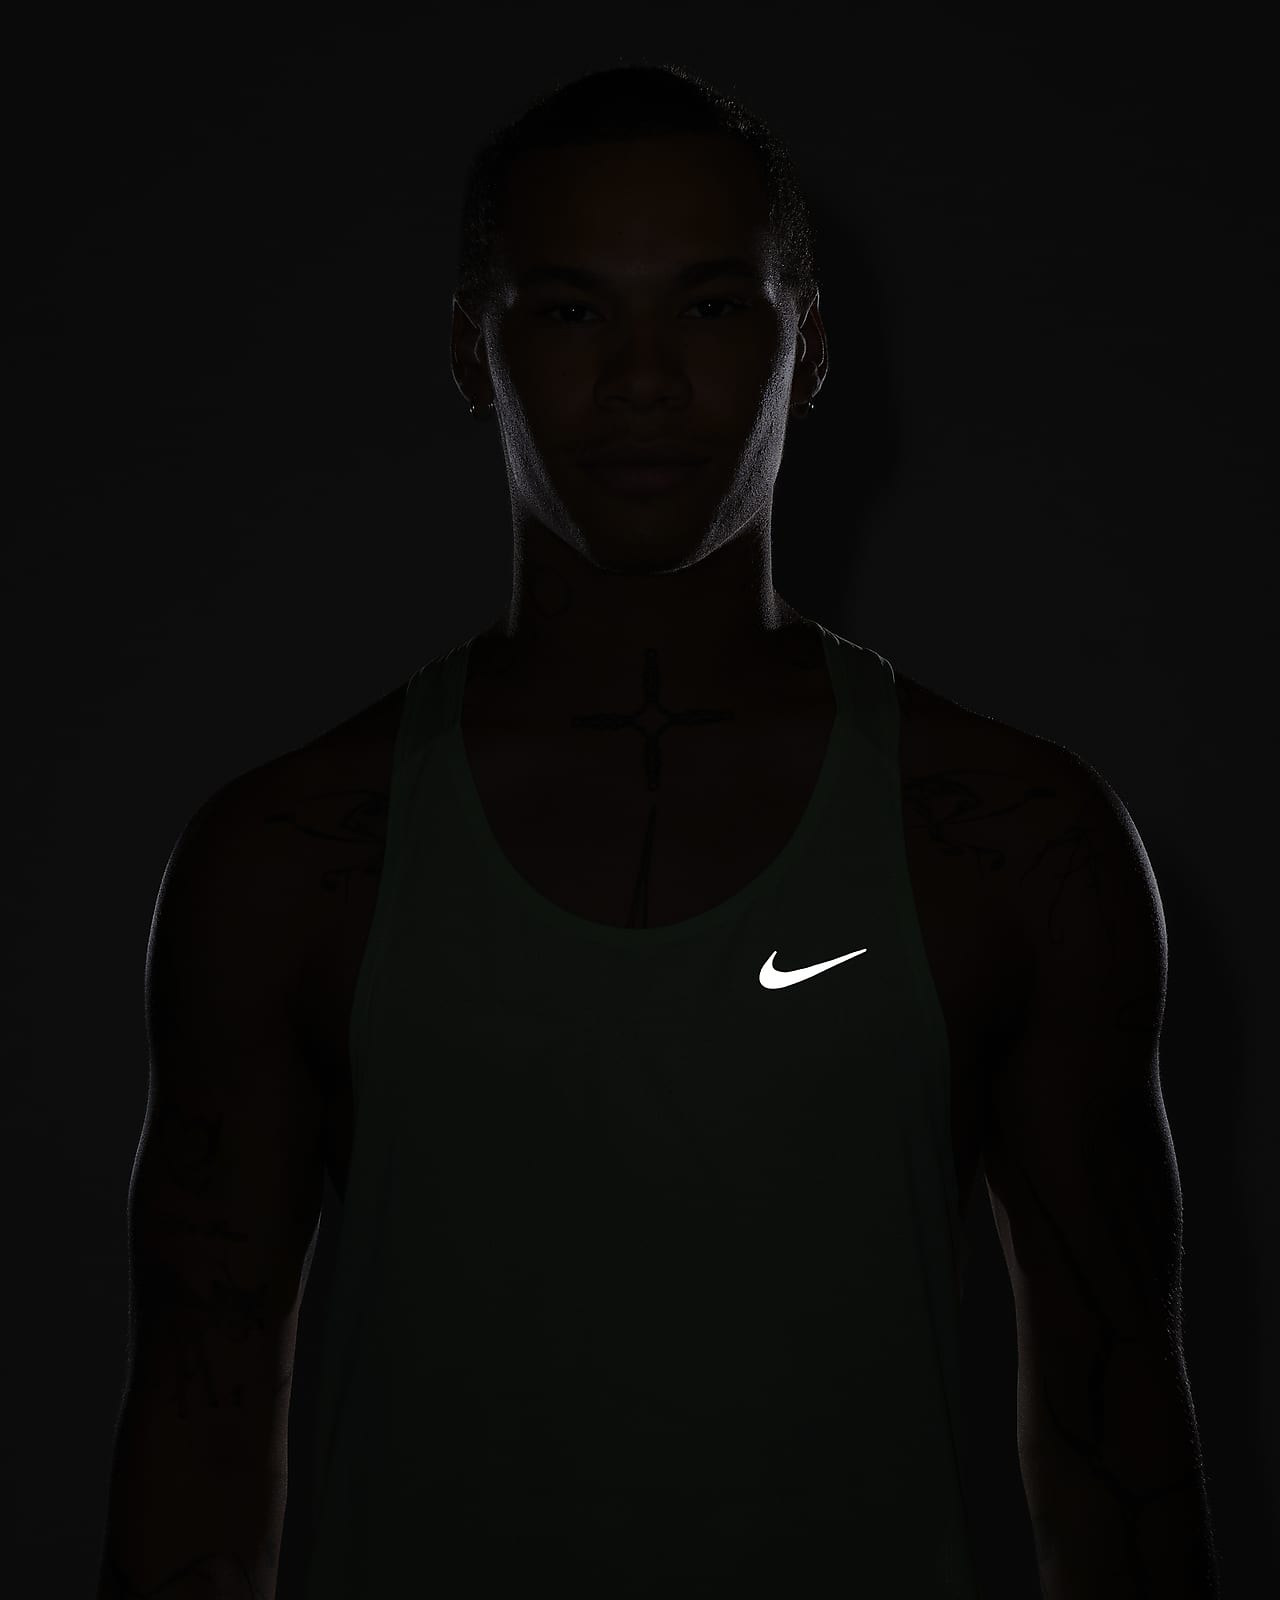 Nike Trail Men's Running Vest - Pure Platinum/Hasta